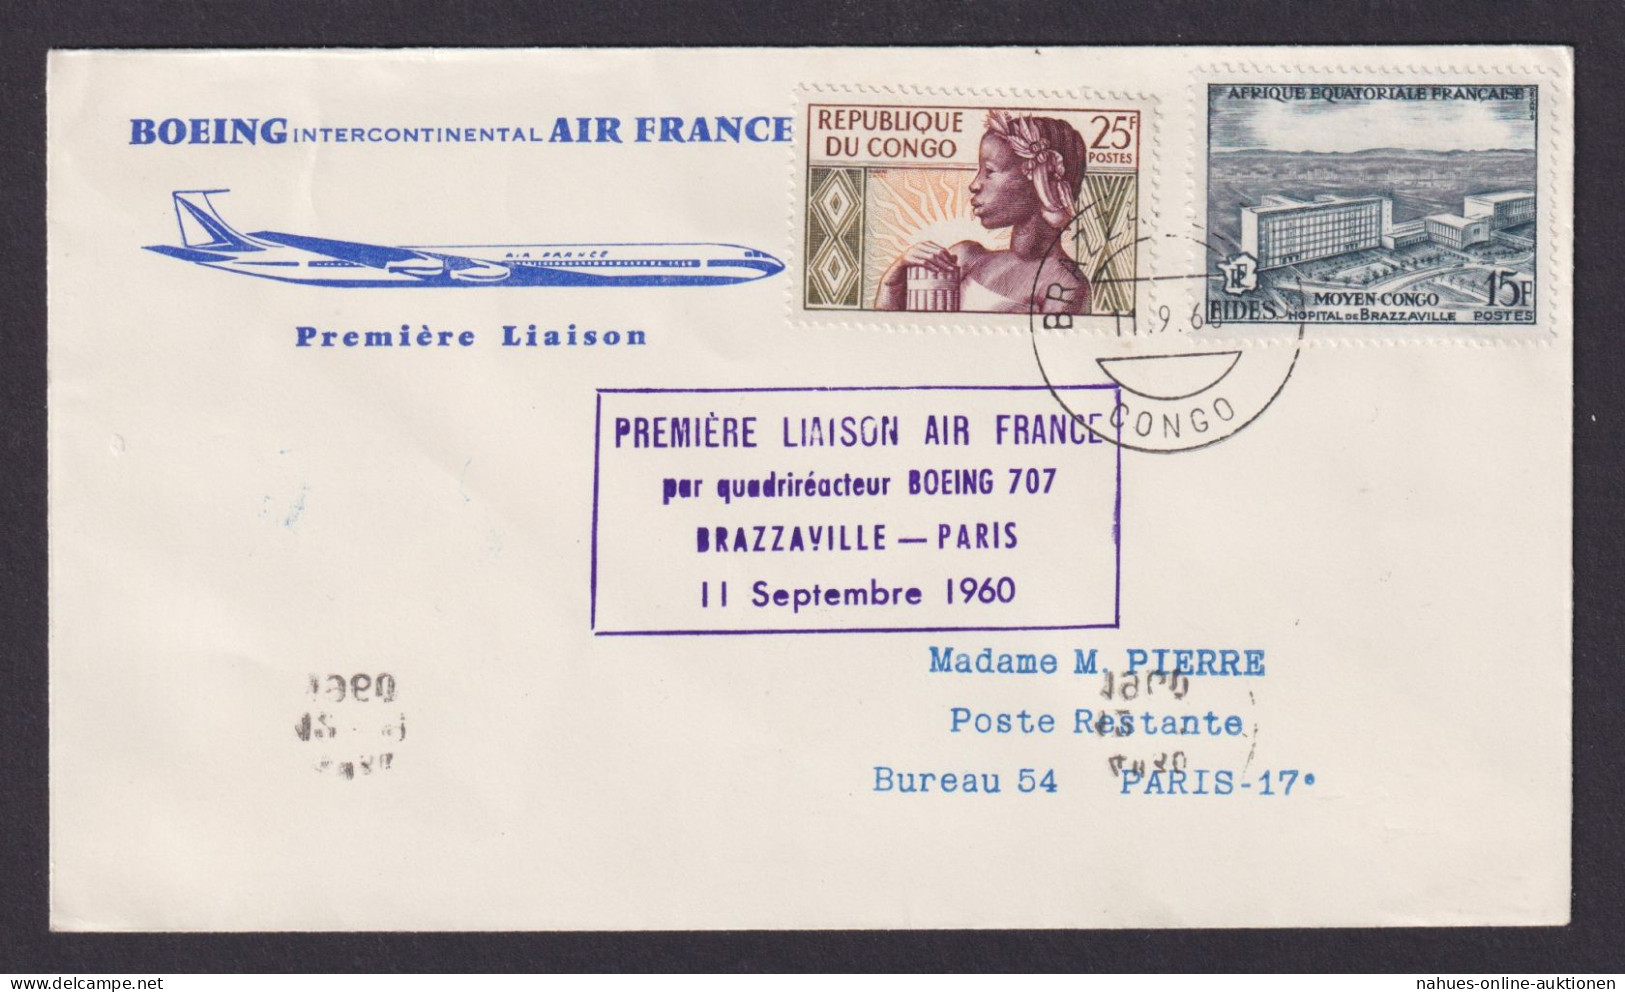 Flugpost Brief Air Mail Air France Boeing Intercontinental Erstflug Brazzaville - Afgestempeld